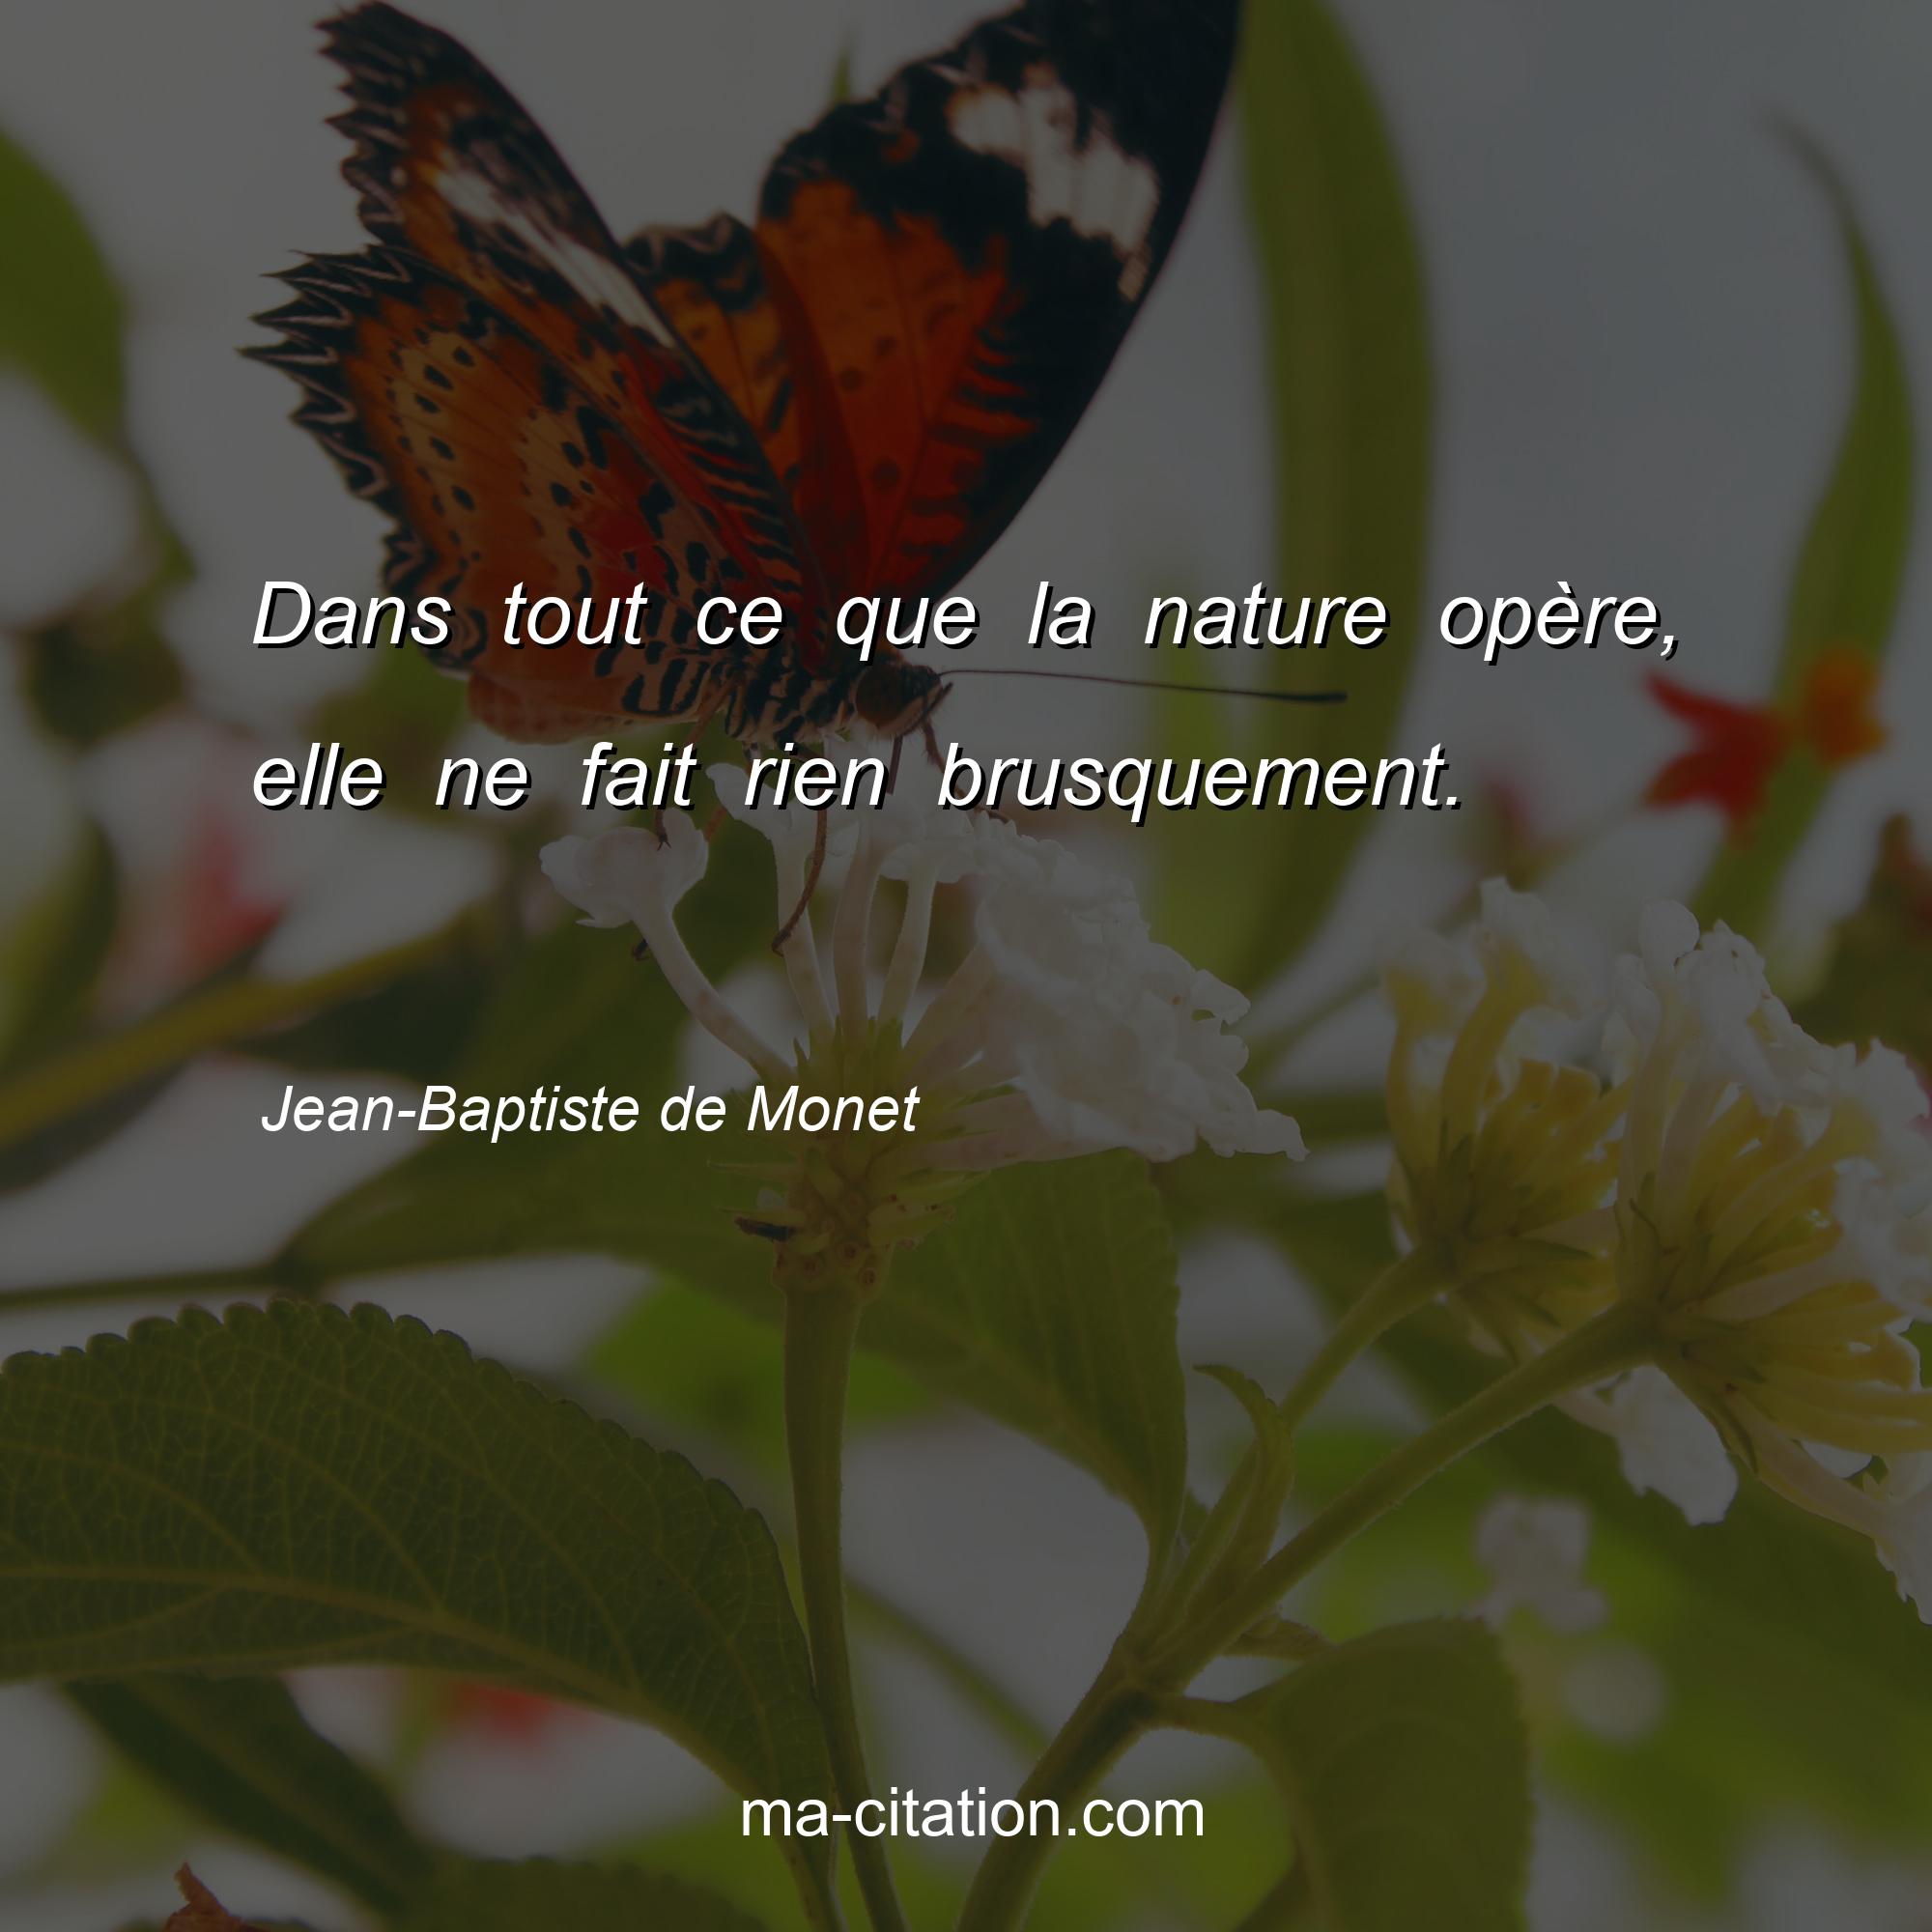 Jean-Baptiste de Monet : Dans tout ce que la nature opère, elle ne fait rien brusquement. 
